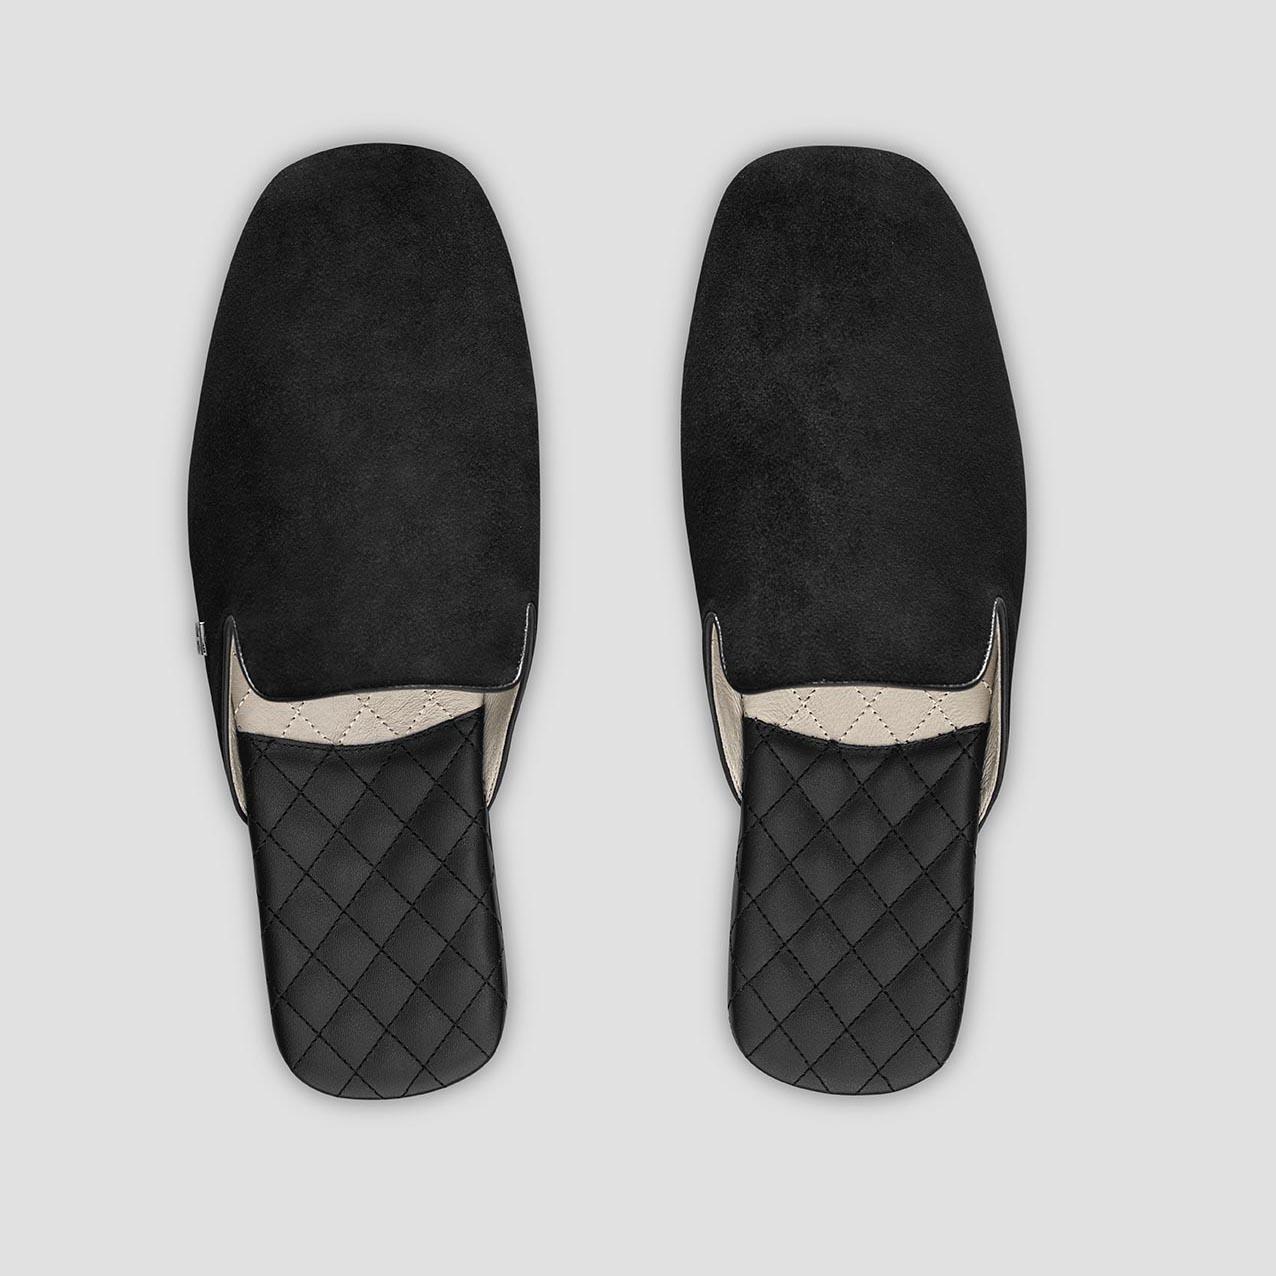 Тапочки Togas Реон черные мужские кожаные, размер 40-41